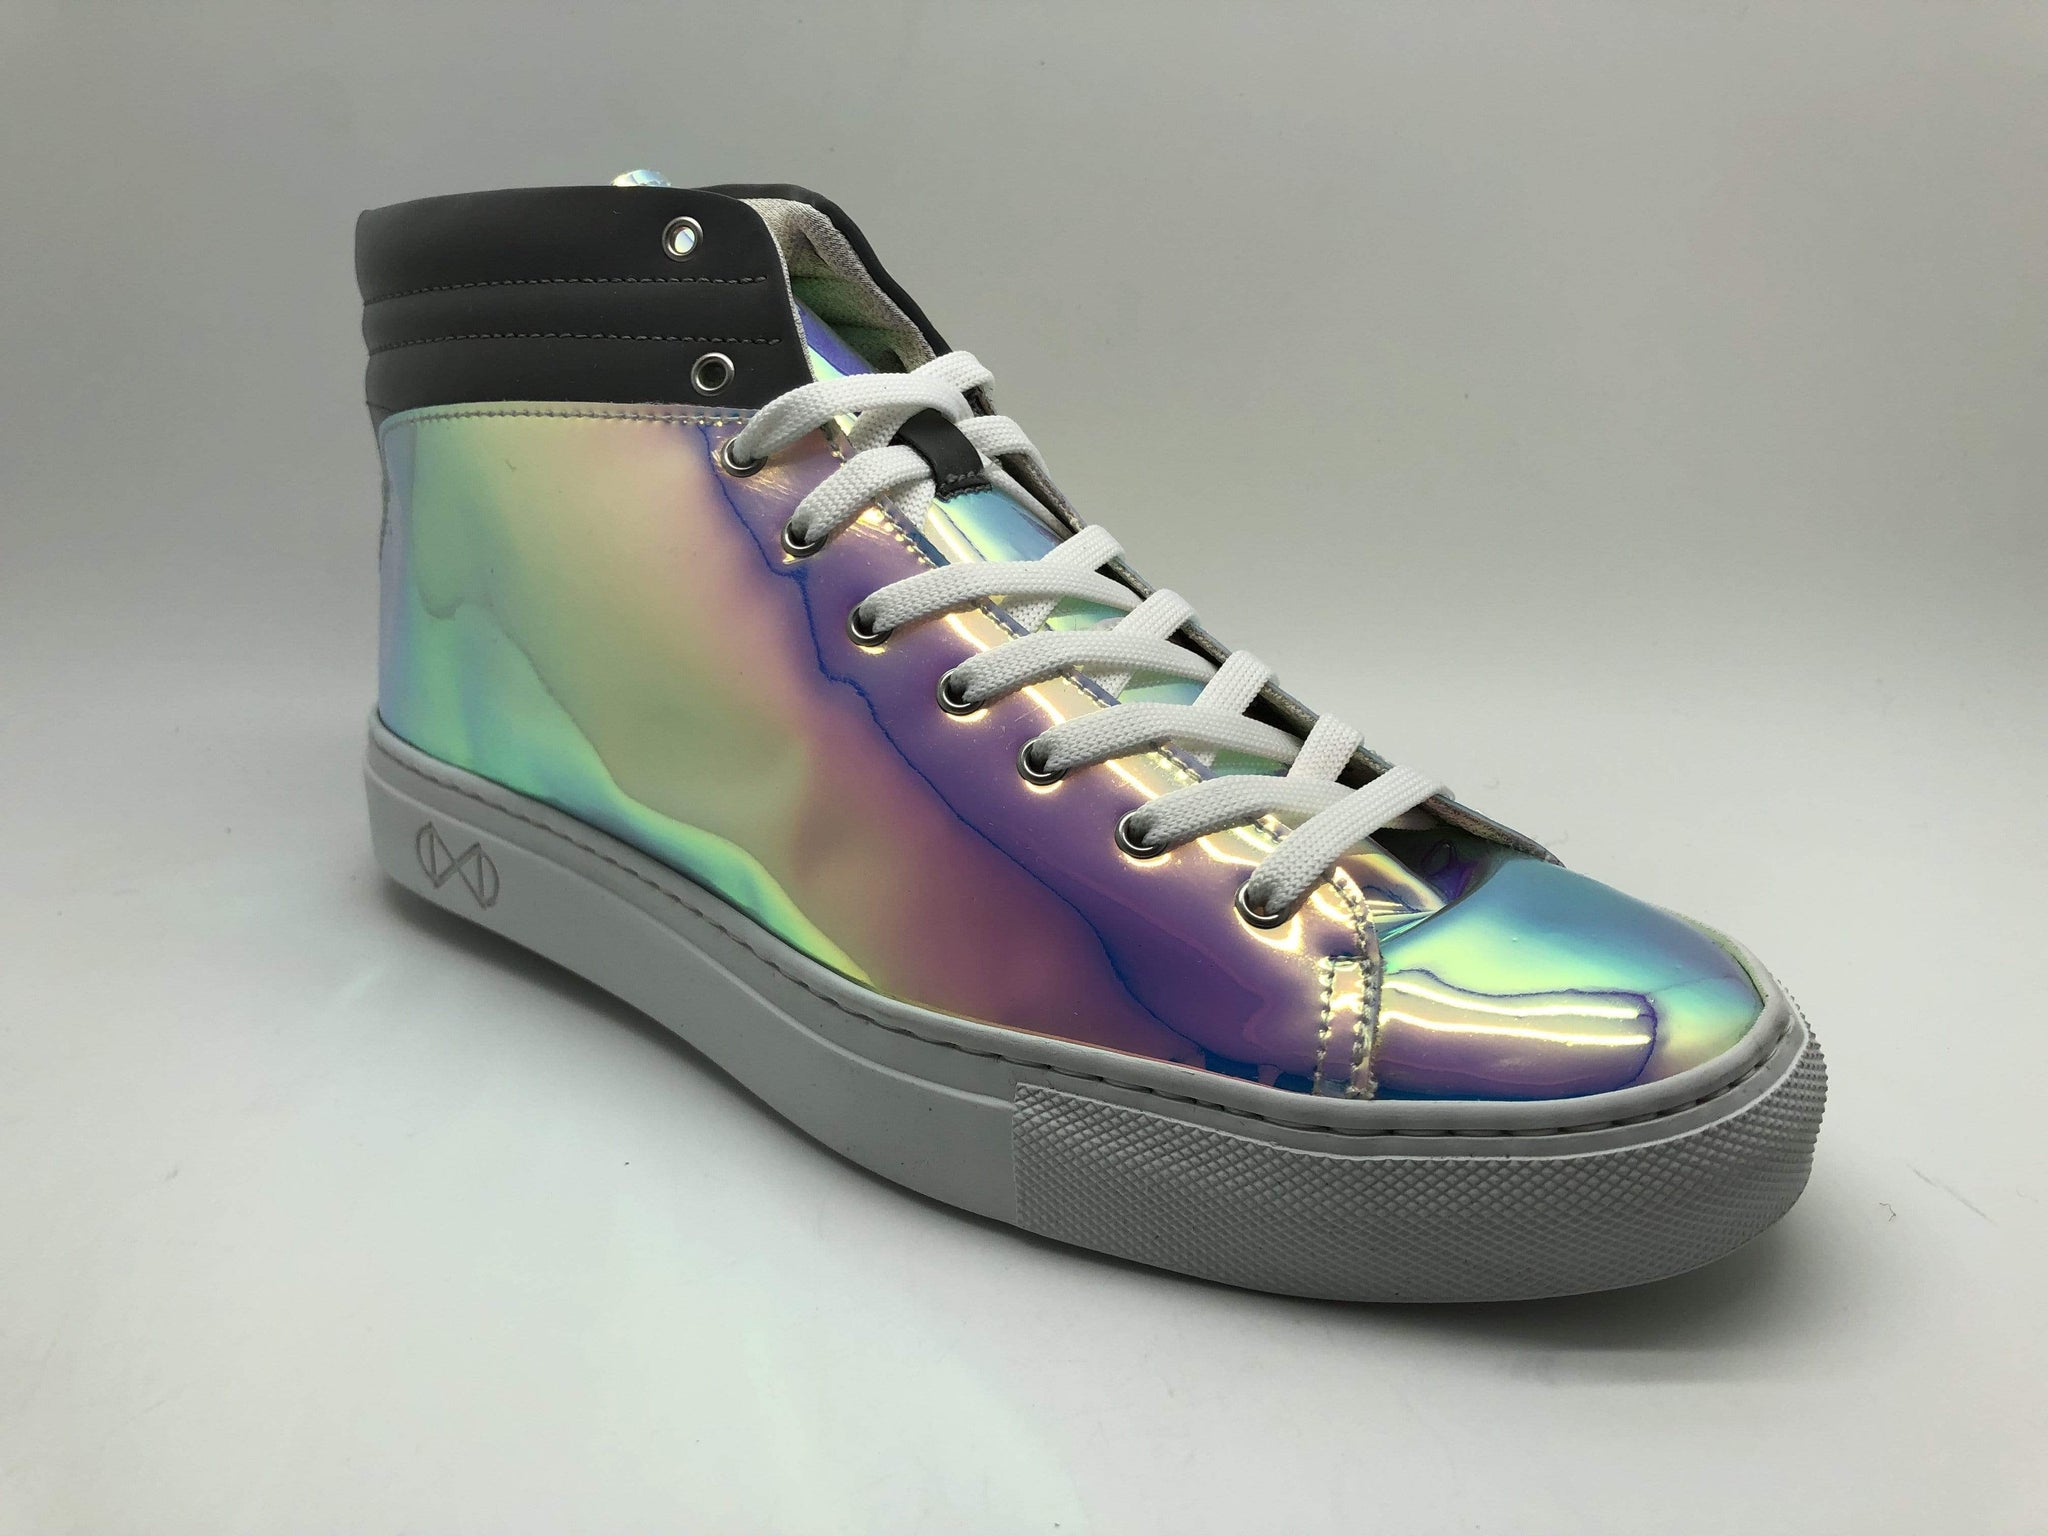 Zapatillas de deporte elegantes en sintético patentado ultra iridiscente.